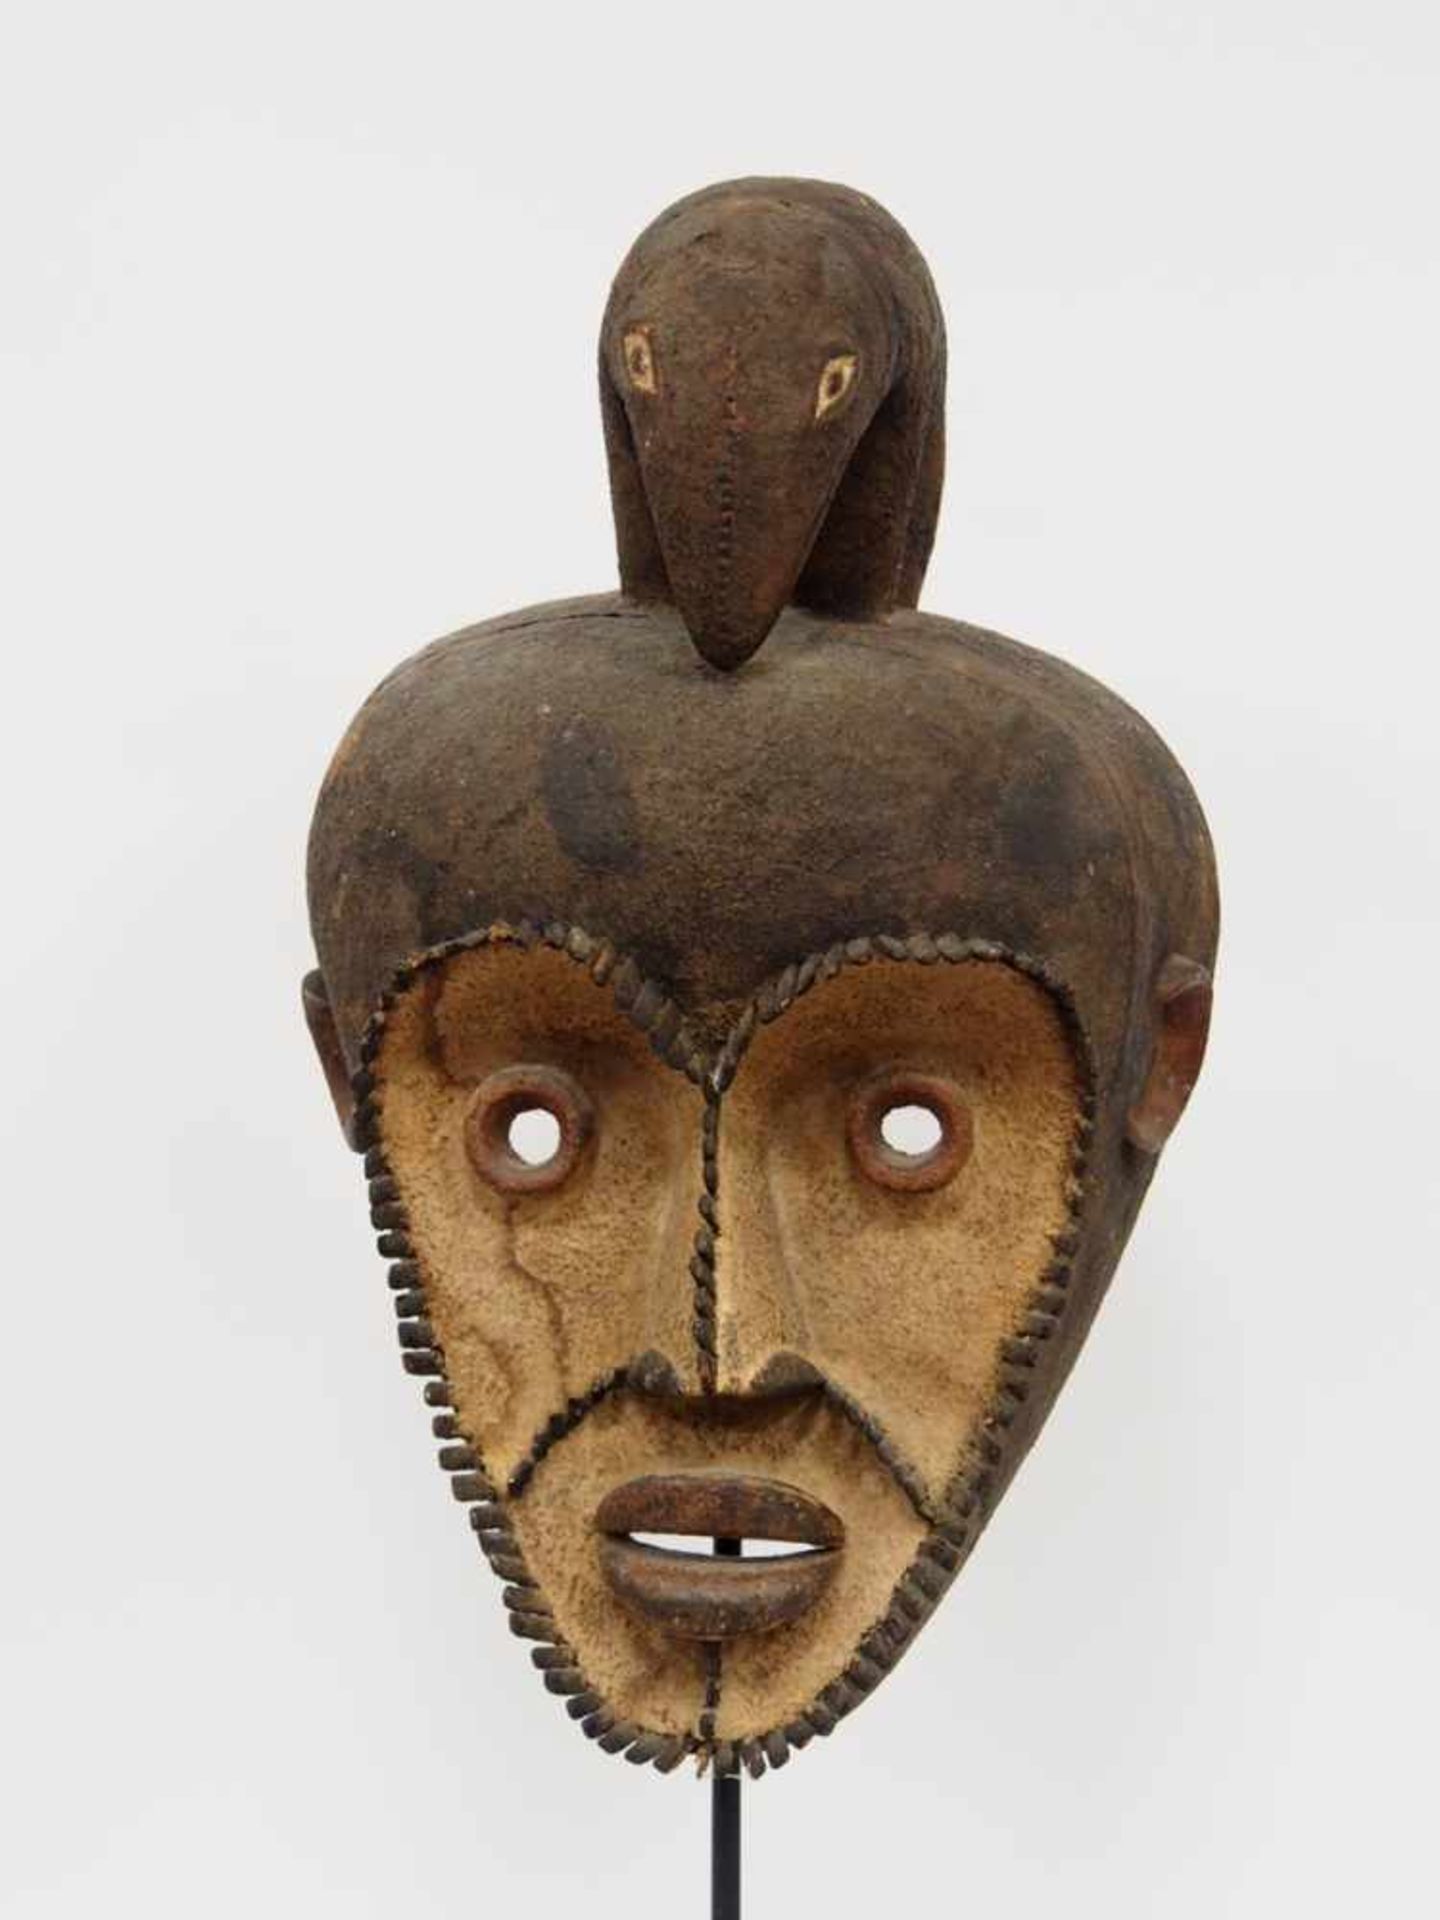 TanzmaskeHolz, geschnitzt, farbig gefasst, Höhe 47 cm (ohne Aufsteller), Mambila, Nigeria, wohl,